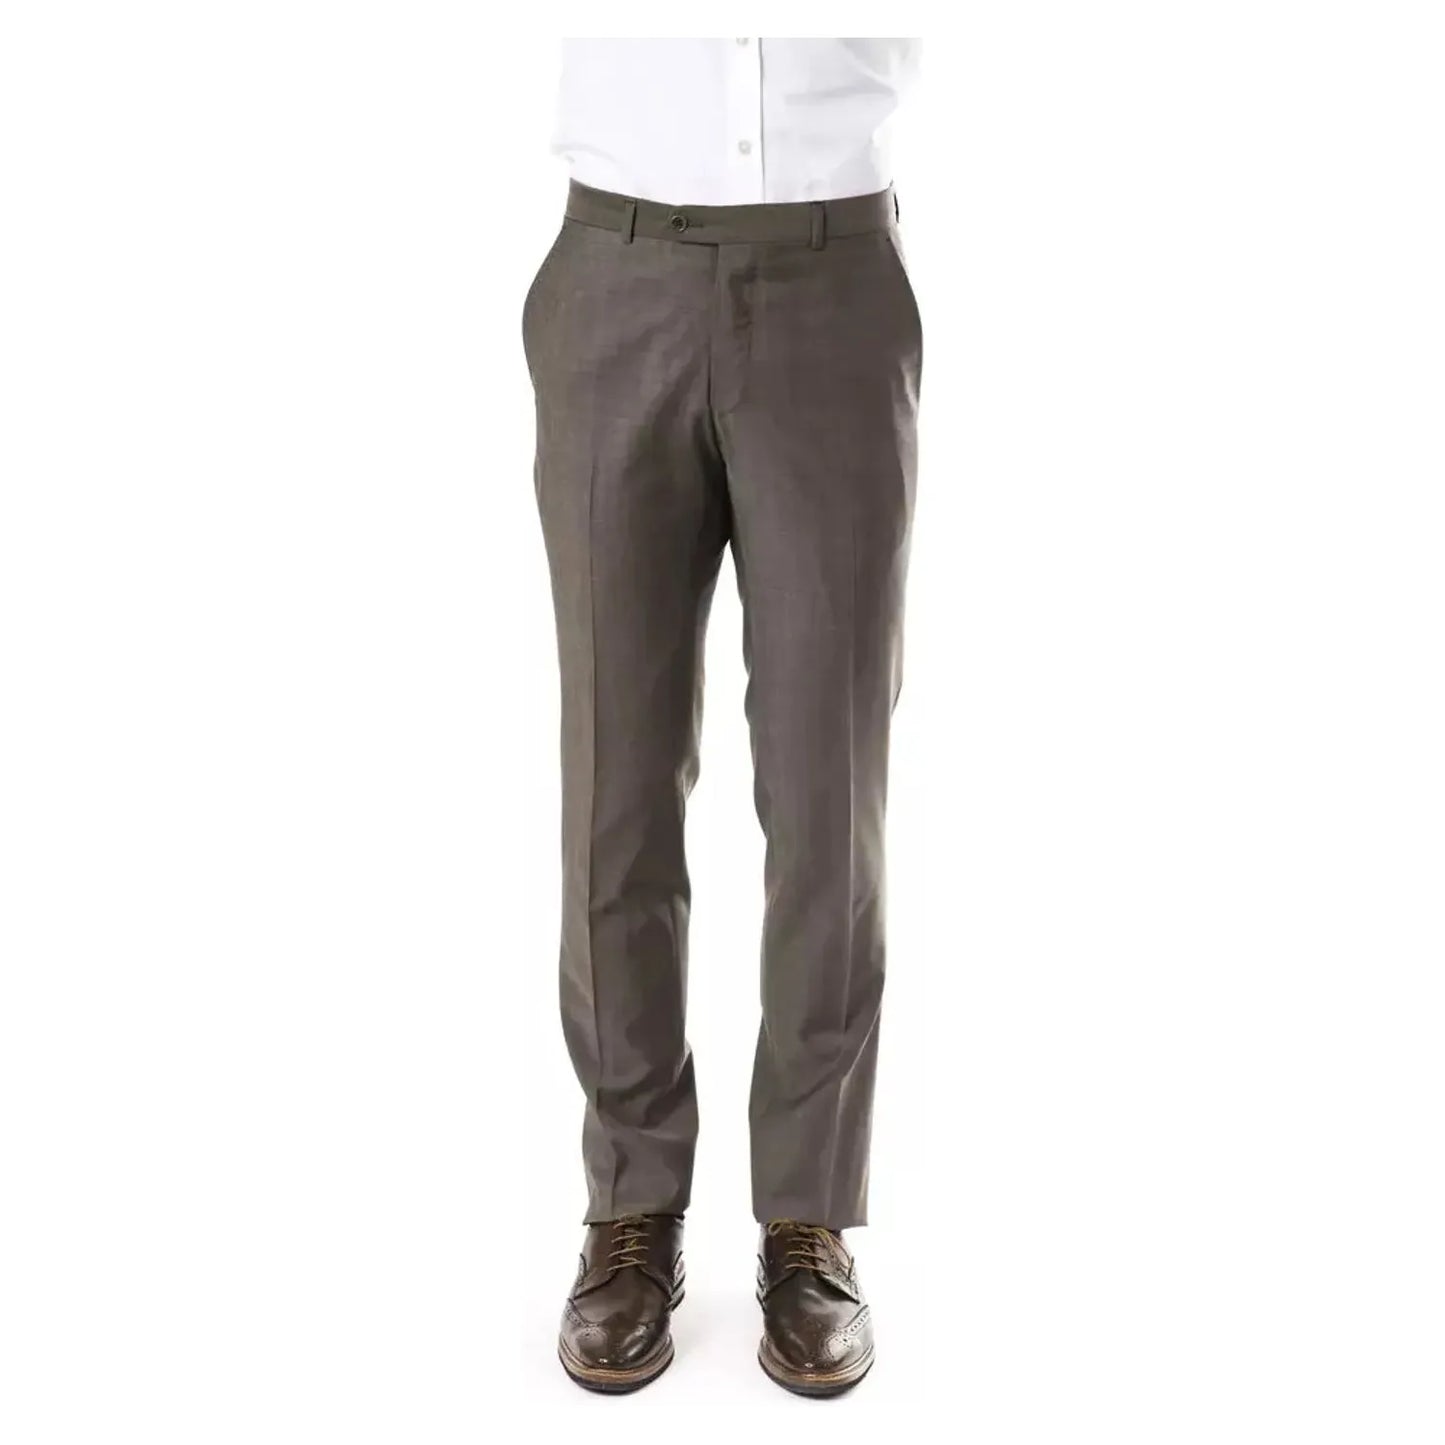 Uominitaliani Elegant Gray Woolen Suit Pants - Drop 7 Cut u-jeans-pant-5 stock_product_image_17033_1447779878-23-a3d3eba0-5b6.webp